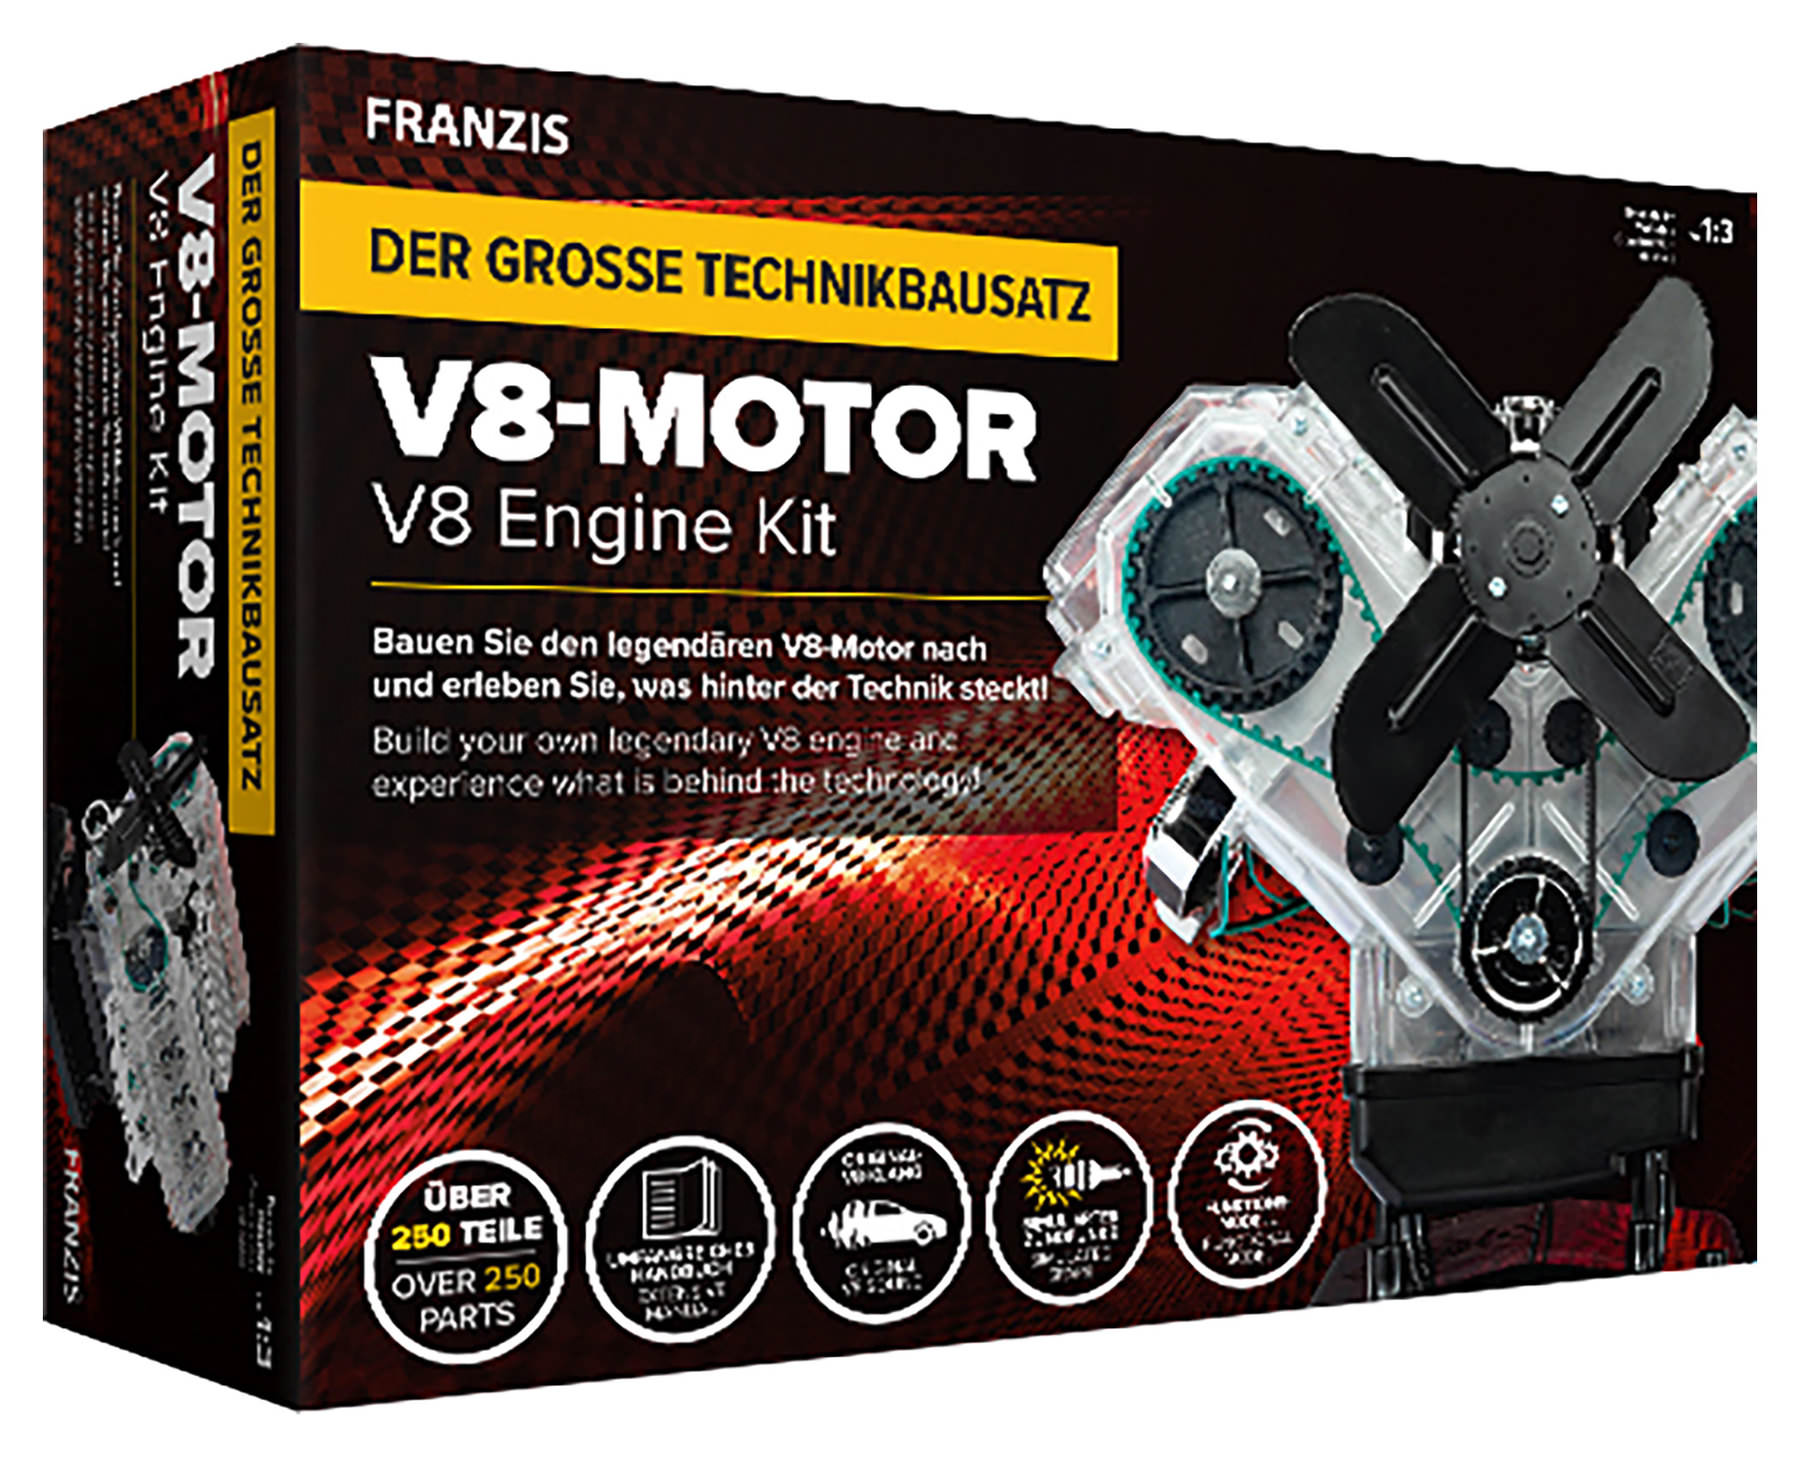 Franzis Verlag V8-Motor